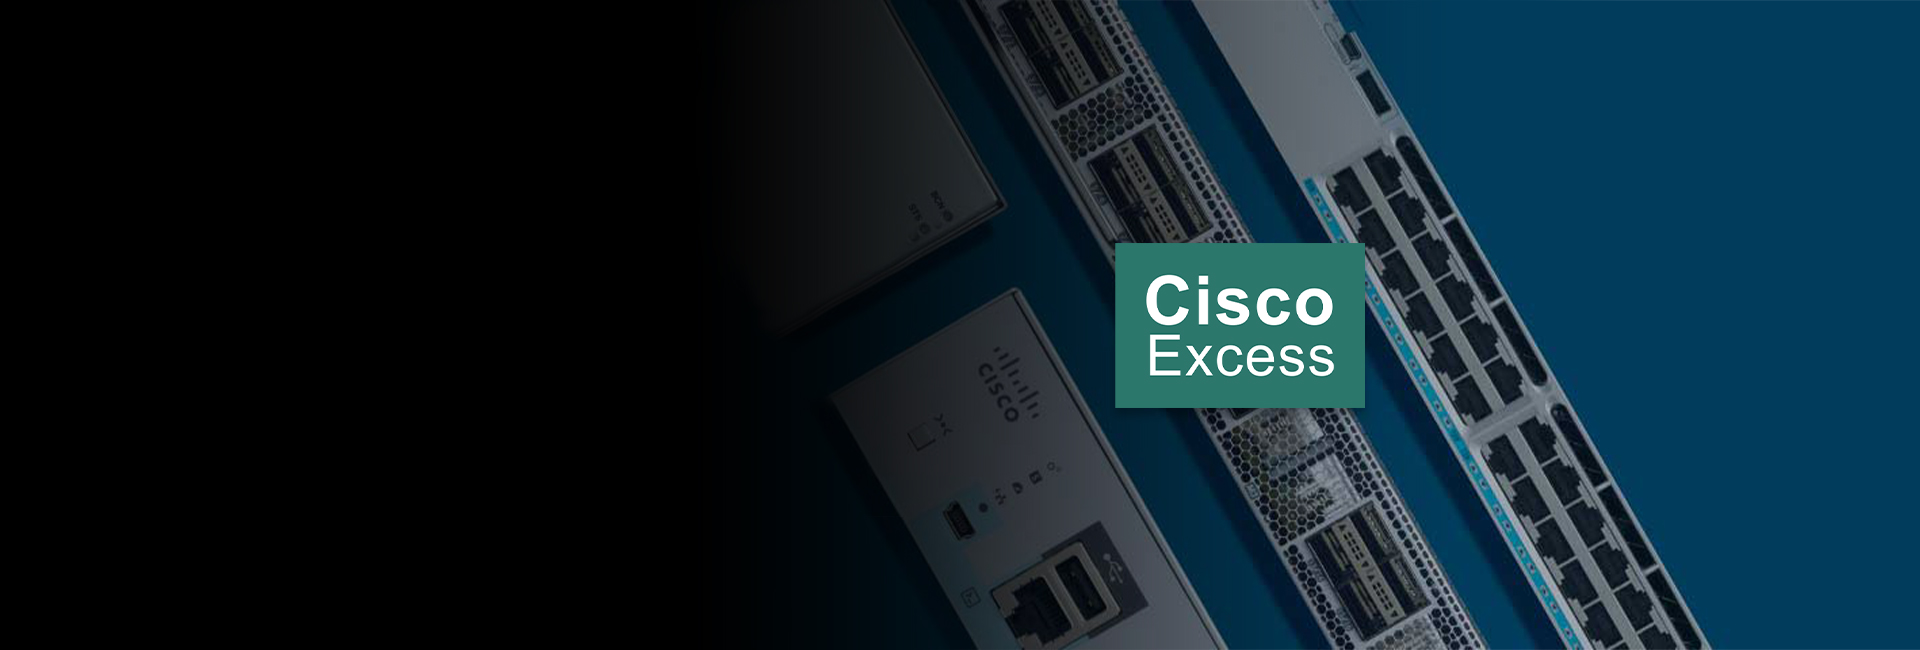 Cisco Excess